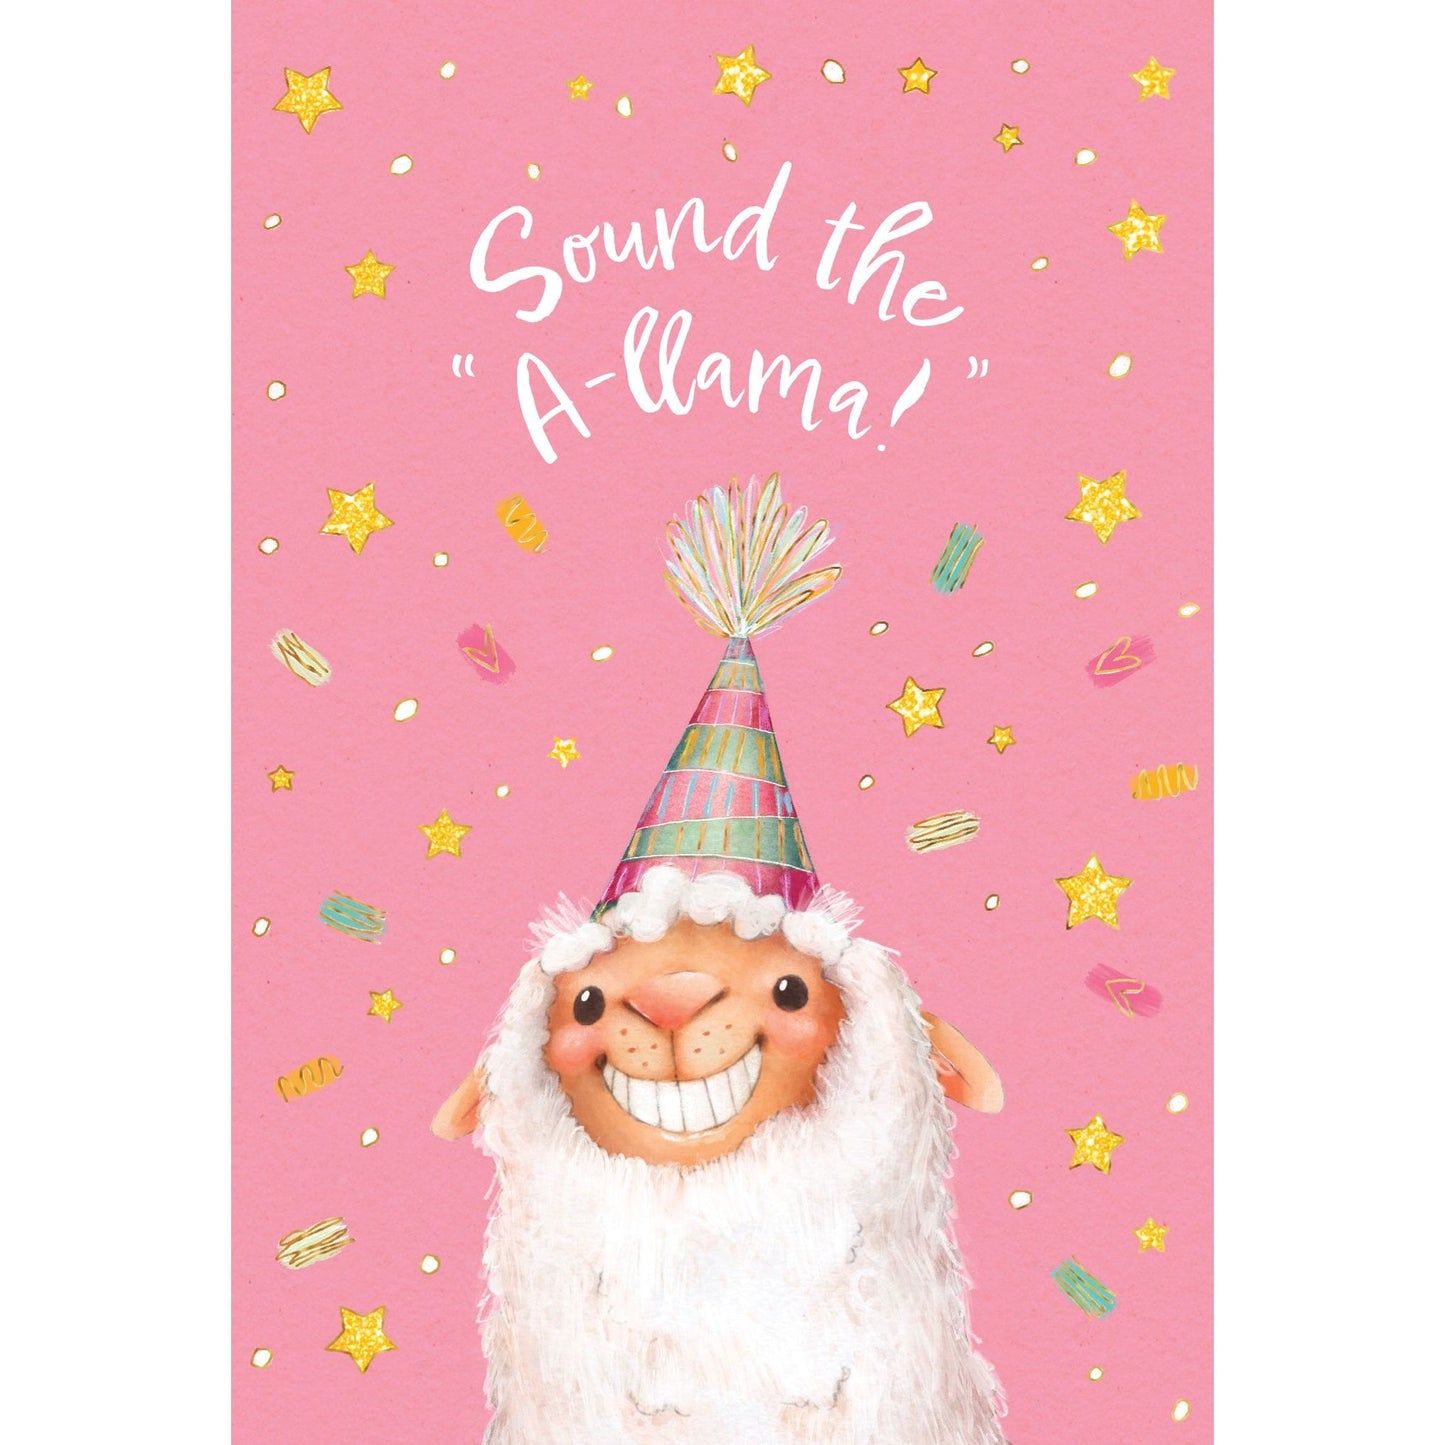 Sound The A-llama Birthday Card